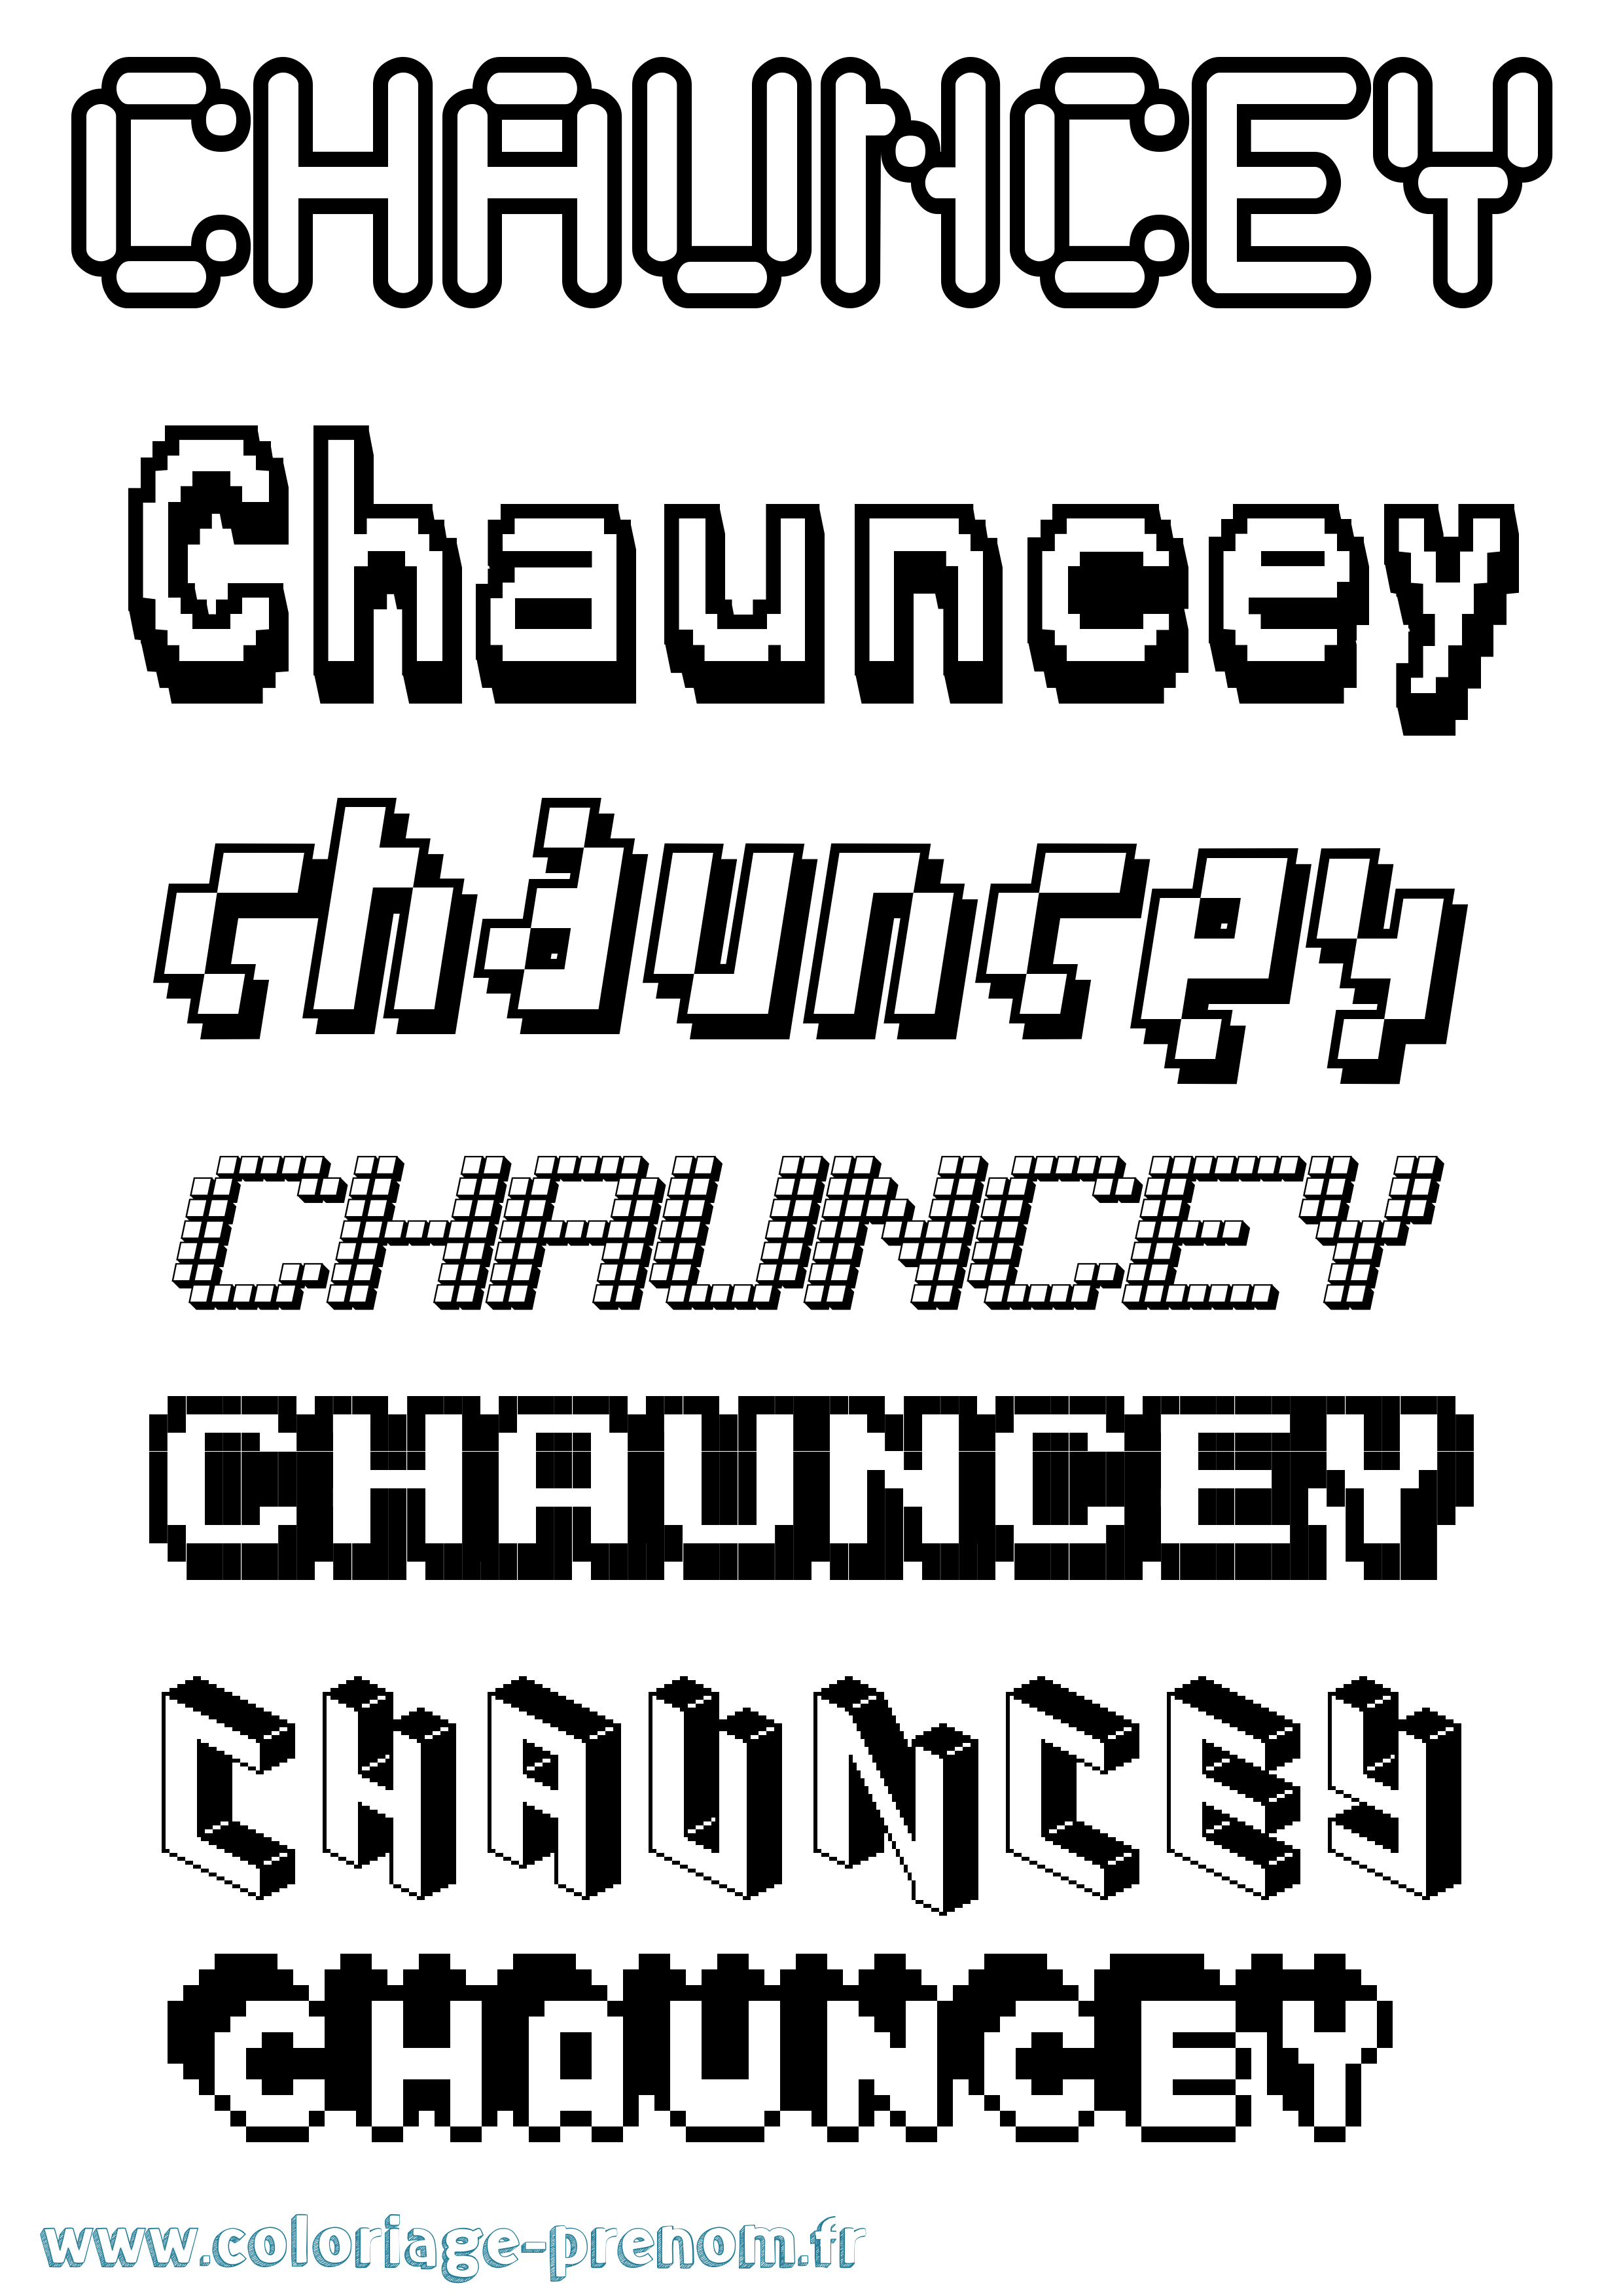 Coloriage prénom Chauncey Pixel